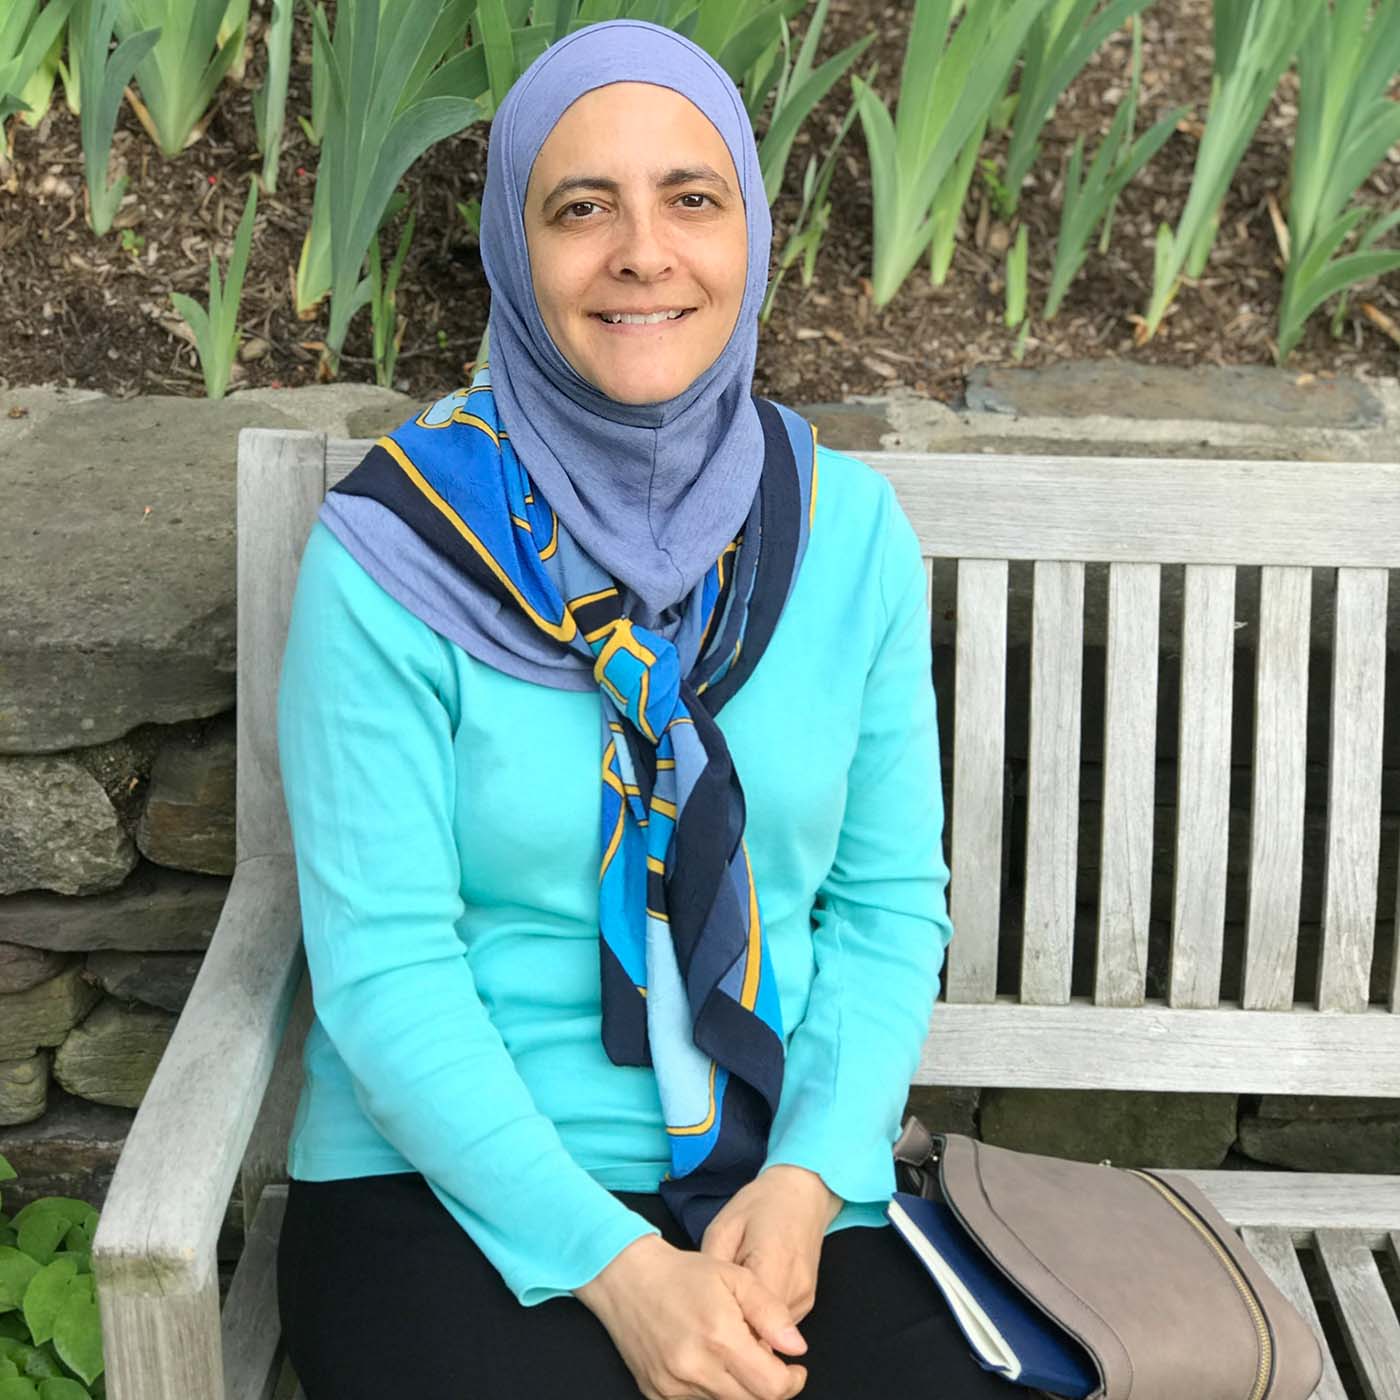 الدكتورة رنا الدجاني عالمة أحياء جزيئية فلسطينية أردنية، وواحدة من أكثر النساء تأثيراً في العالم العربي